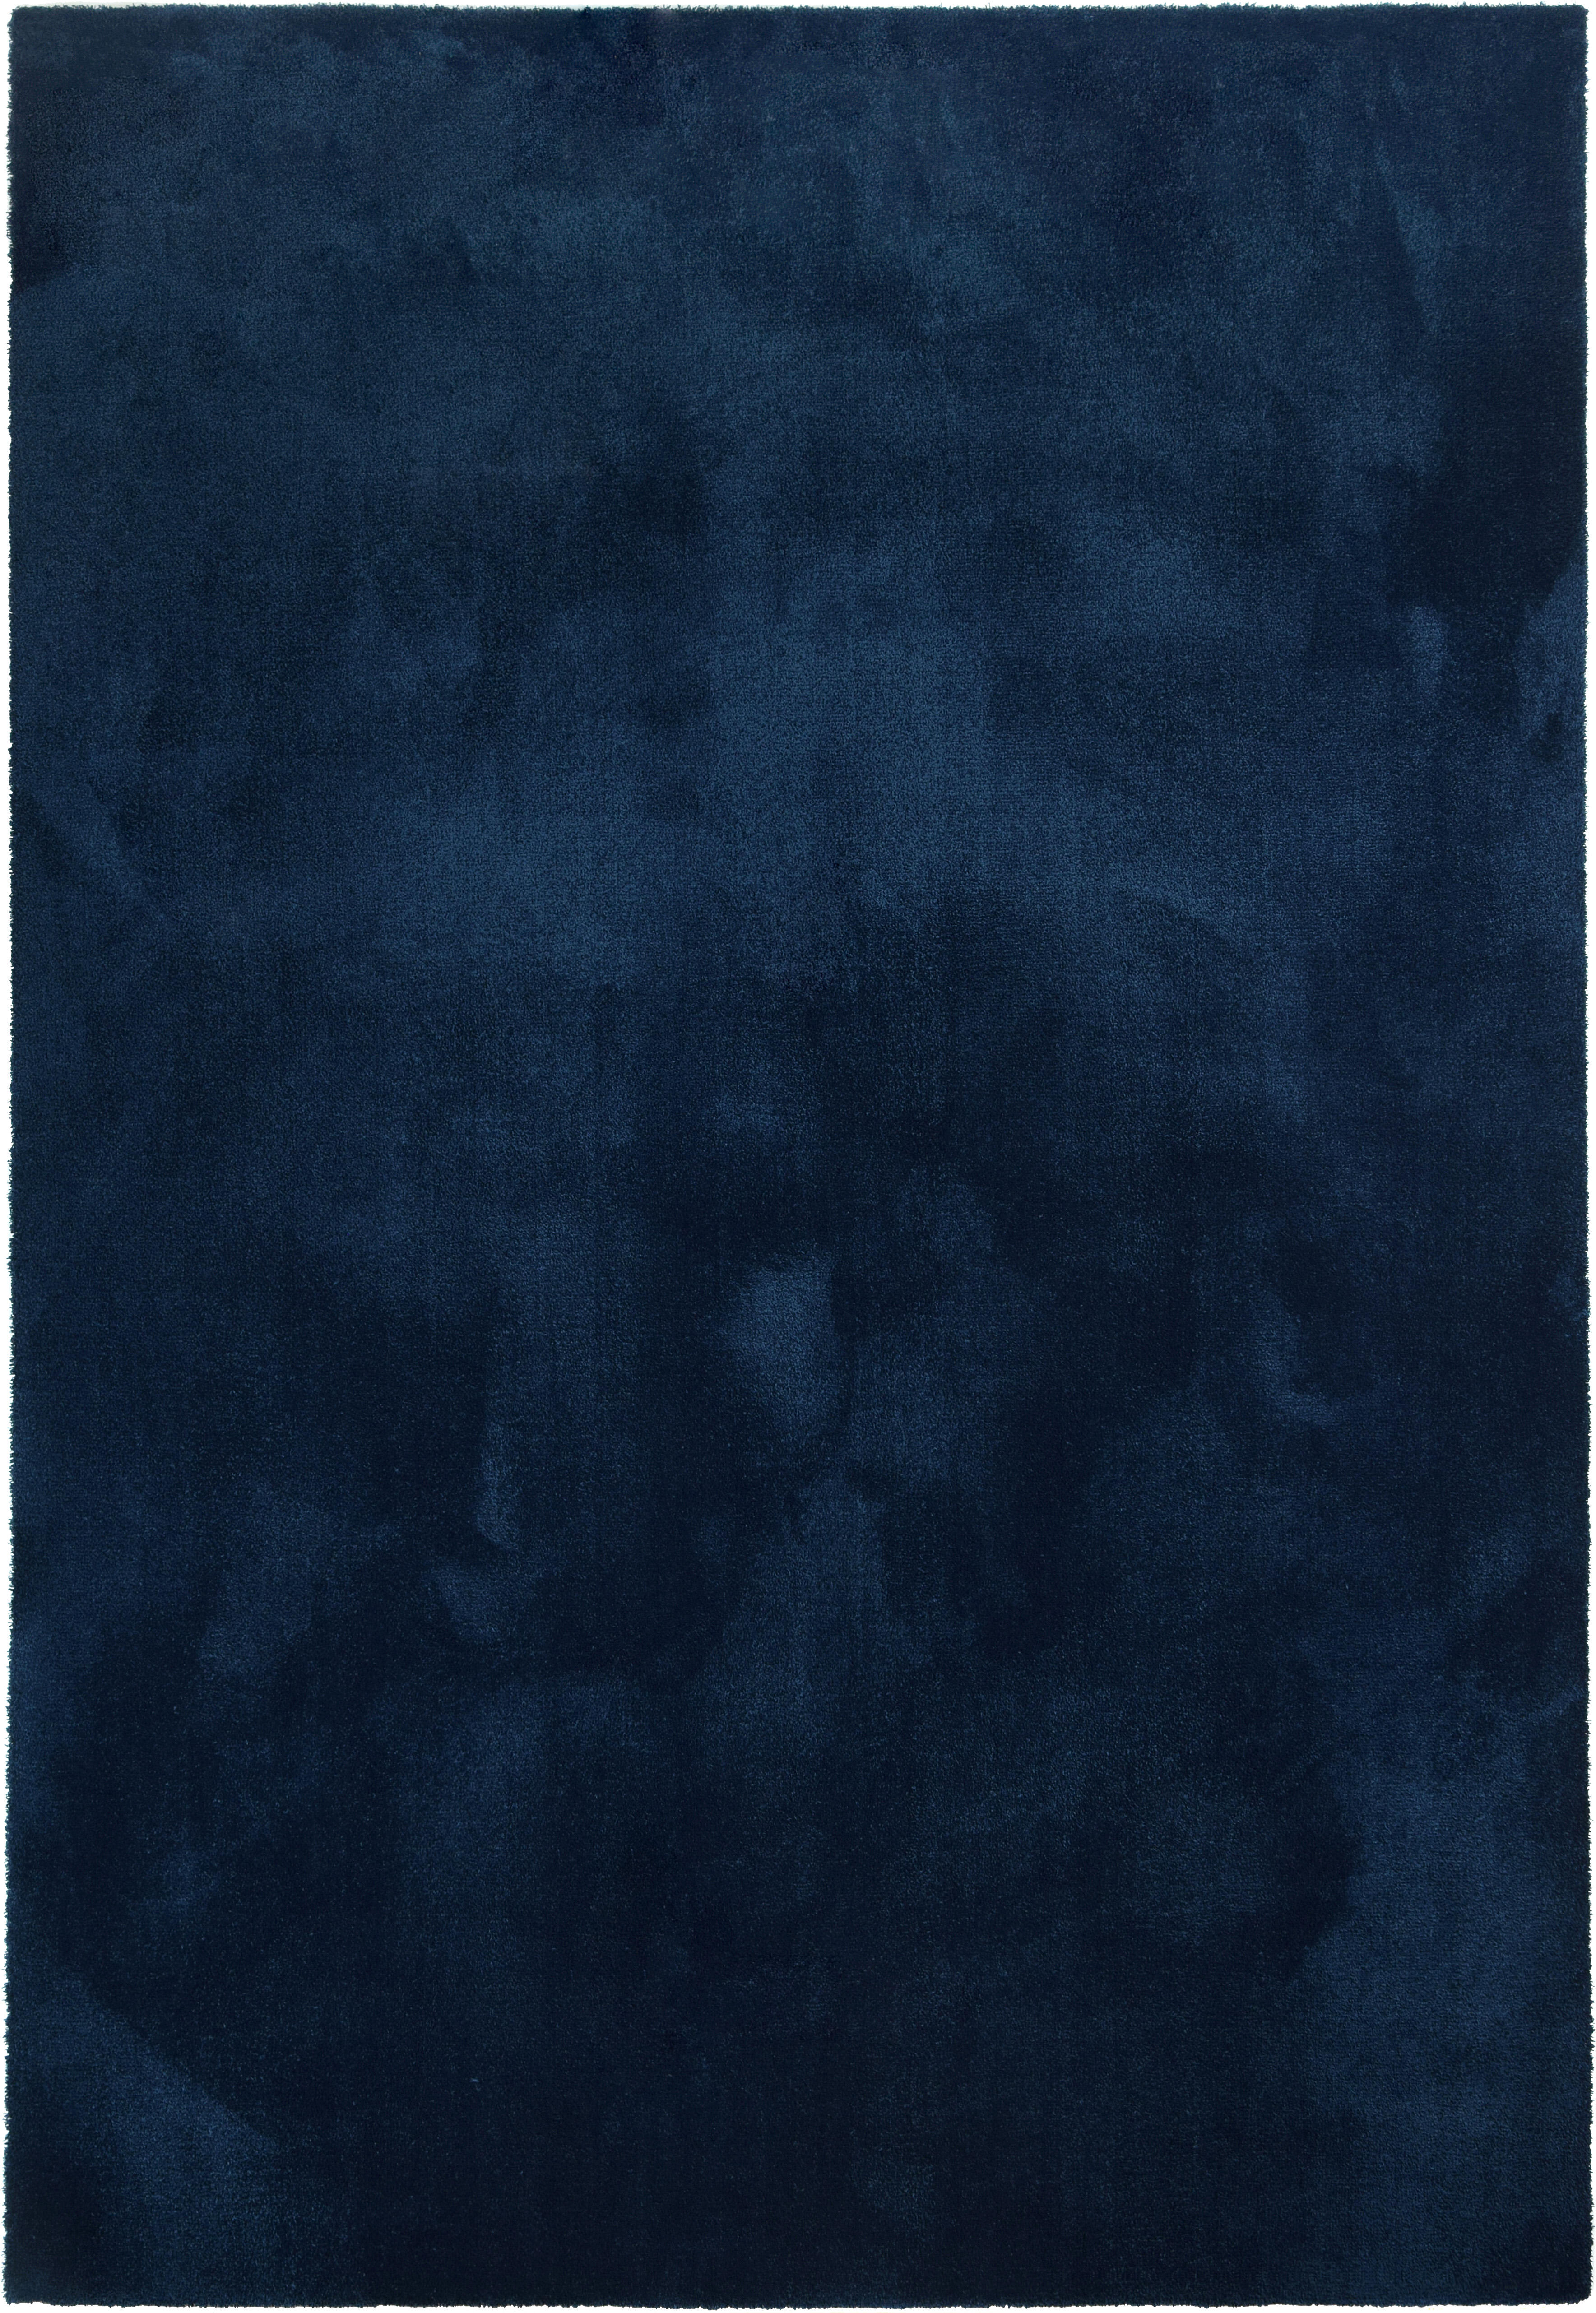 Alfombra poliamida touch azul oscuro 140x200cm